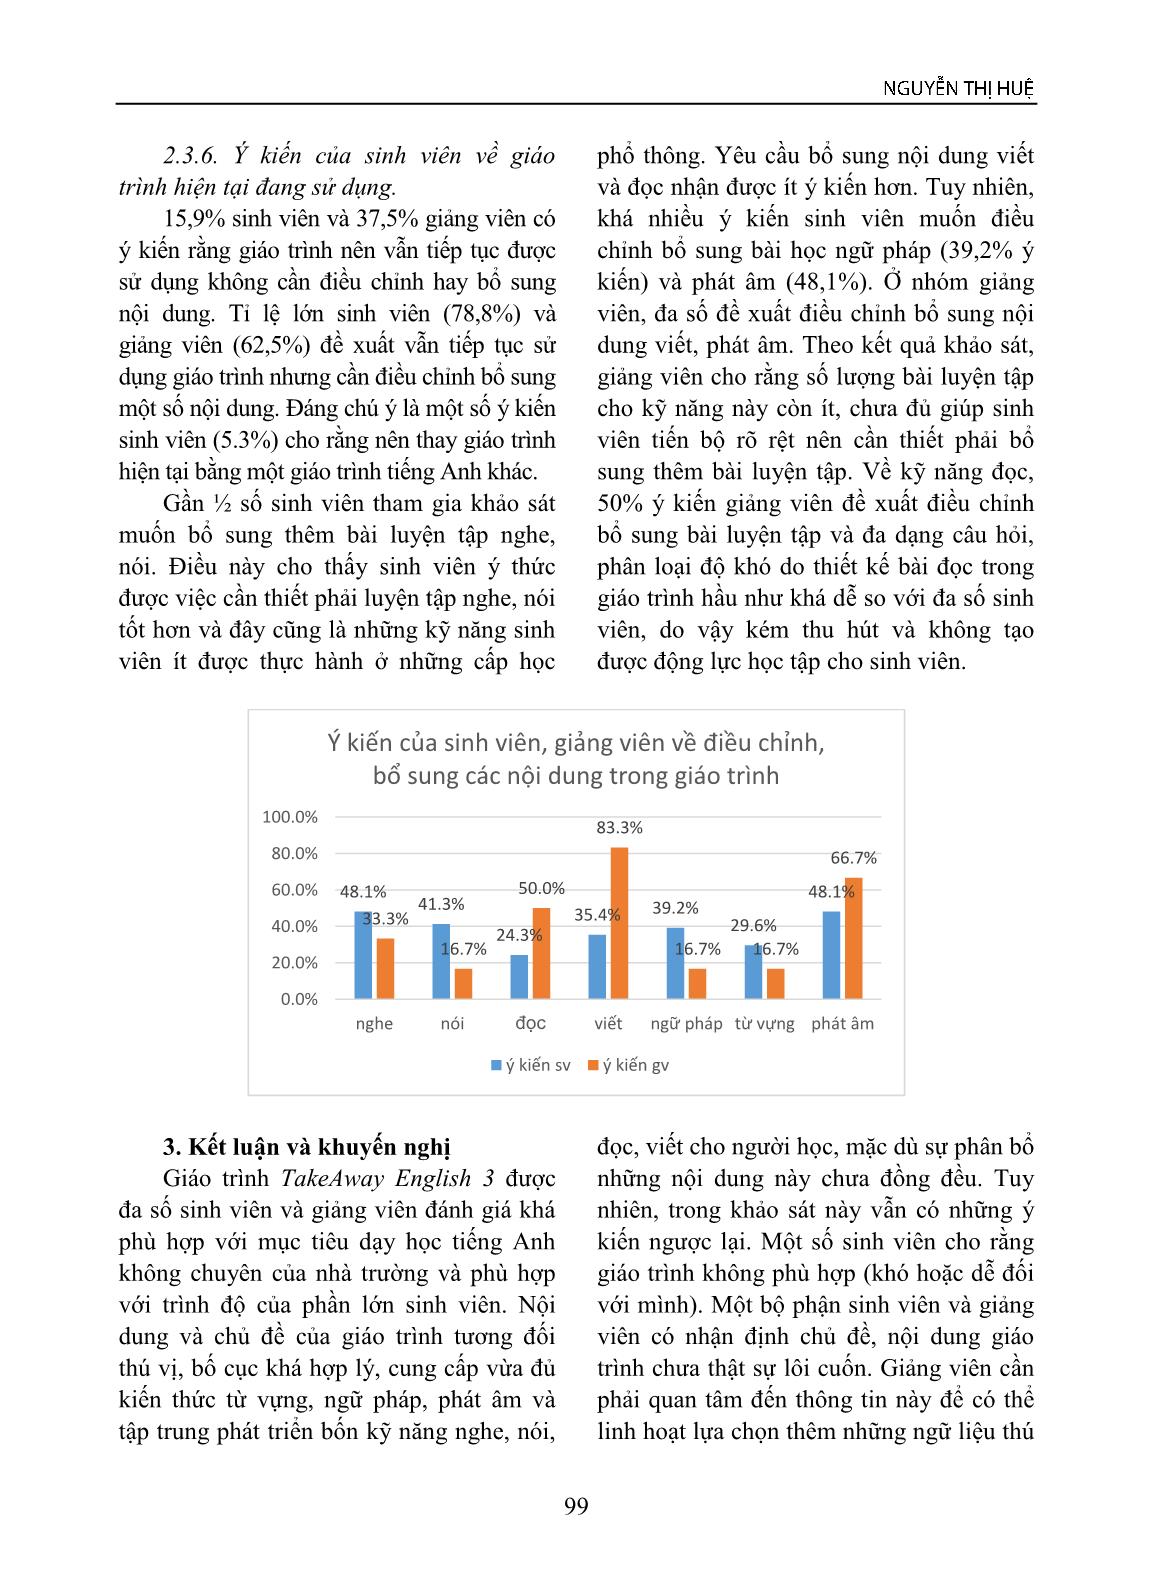 Đánh giá hiệu quả sử dụng giáo trình takeaway English 3 trong việc dạy và học tiếng Anh không chuyên tại trường đại học Sài Gòn trang 5